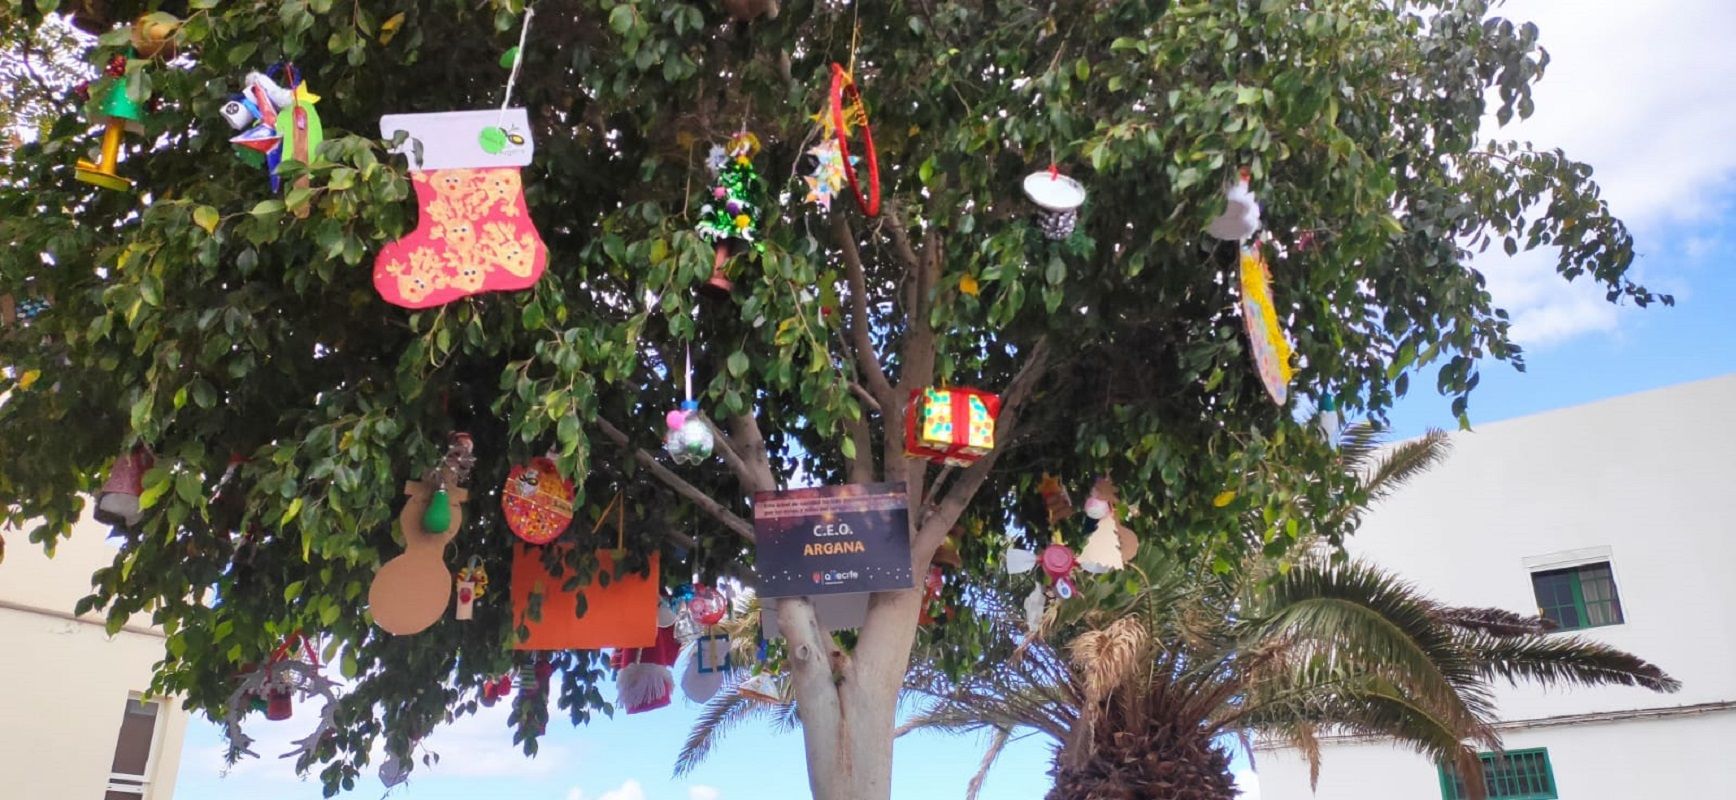 Decoración navideña del CEO Argana Alta. Foto: Ayuntamiento de Arrecife.